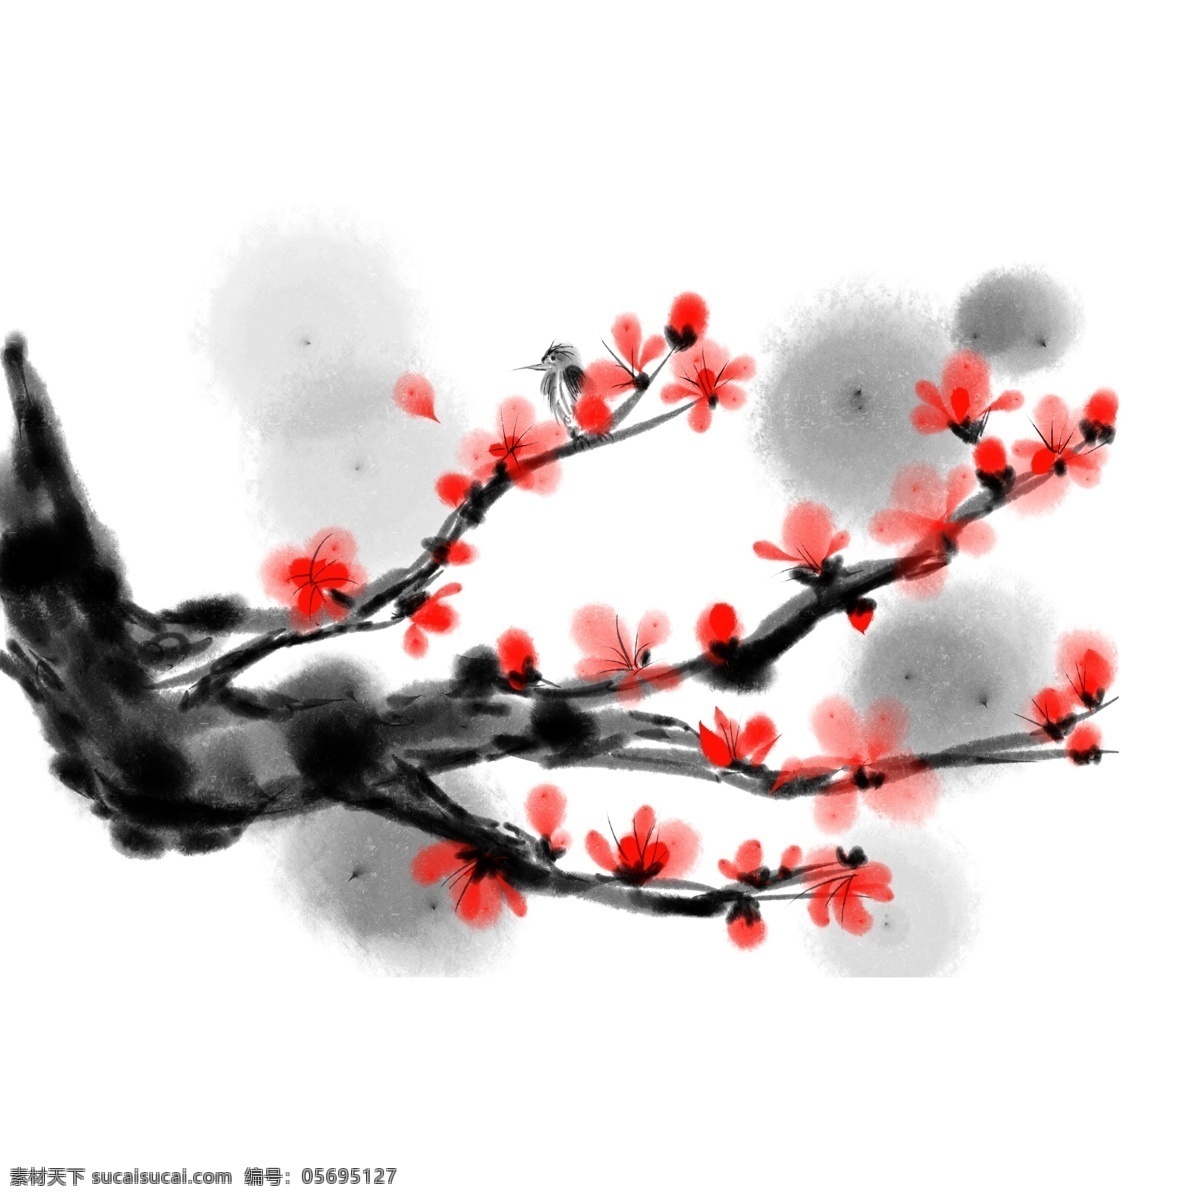 水墨 桃花 手绘 插画 红色的桃花 黑色的树枝 漂亮的桃花 手绘桃花 卡通桃花 桃花装饰 水墨桃花